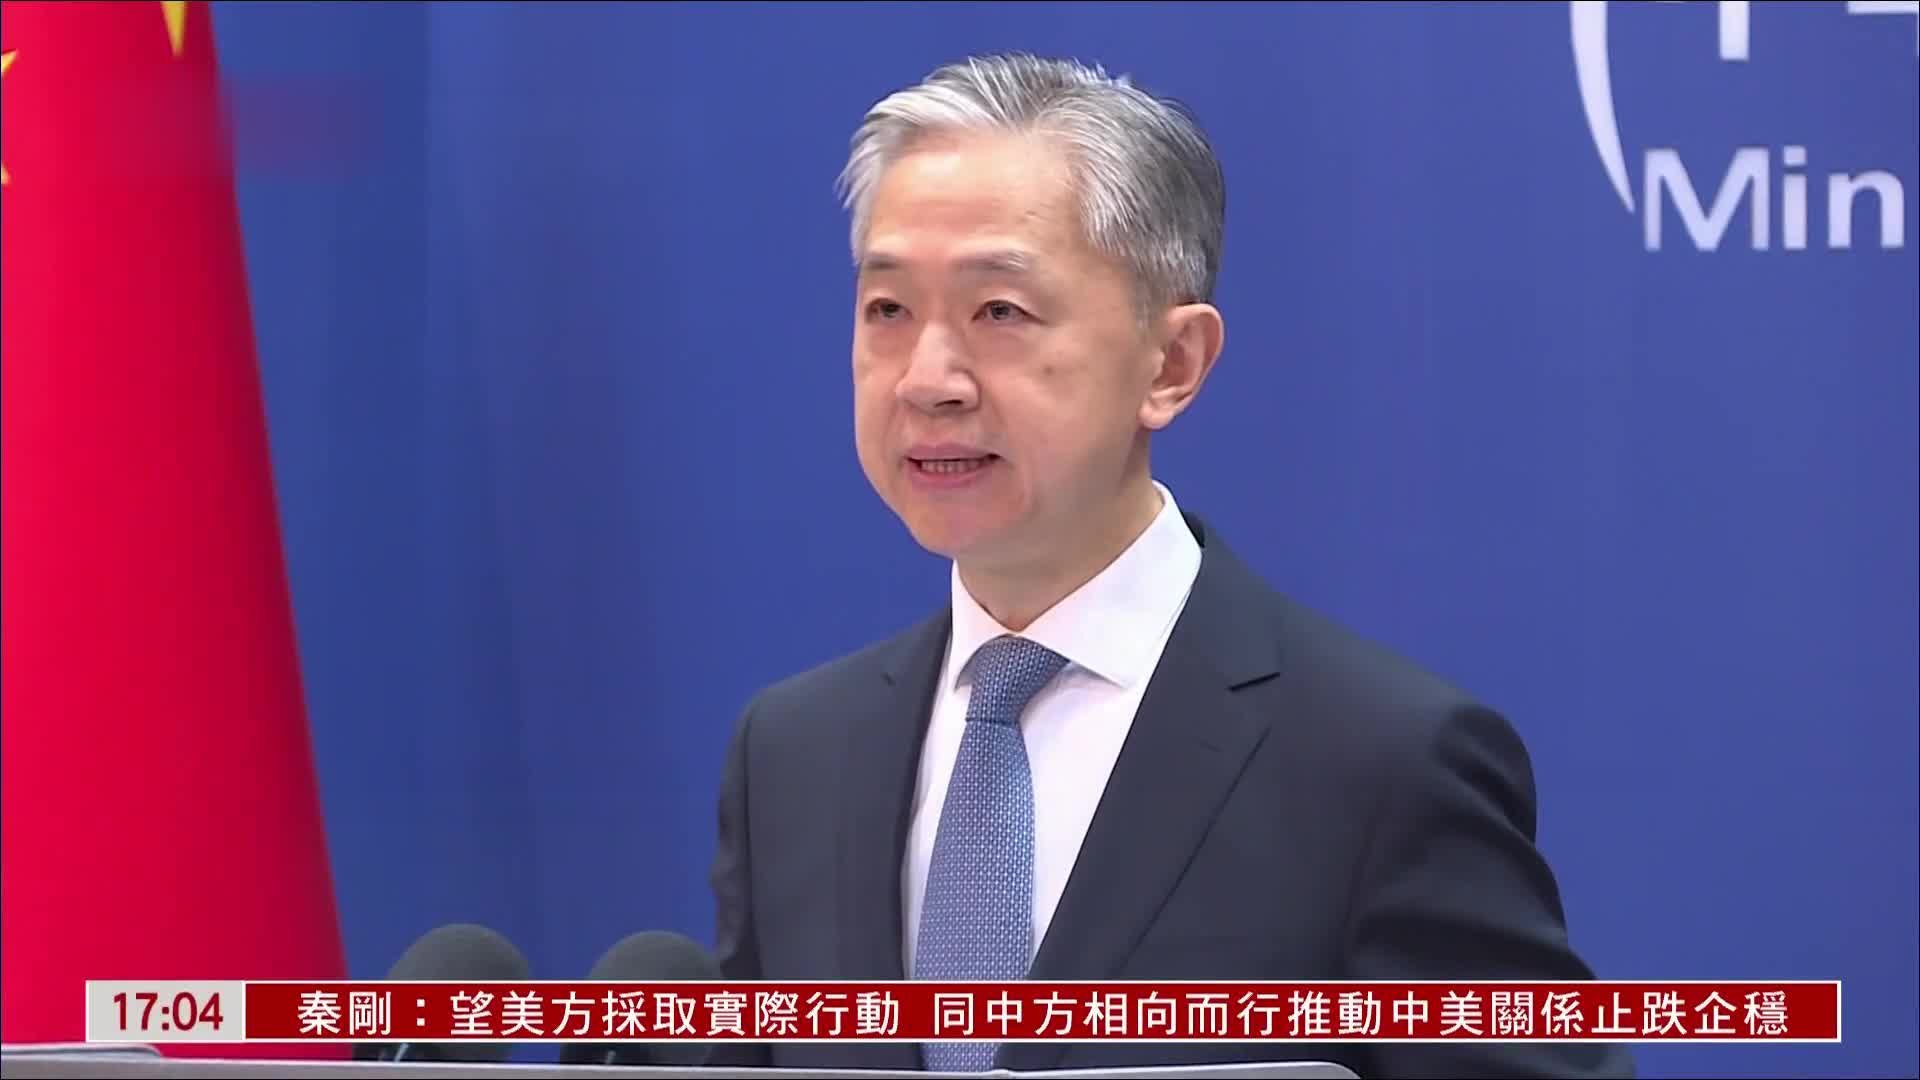 中国外交部驳斥美财长称IMF世行反映美价值观言论